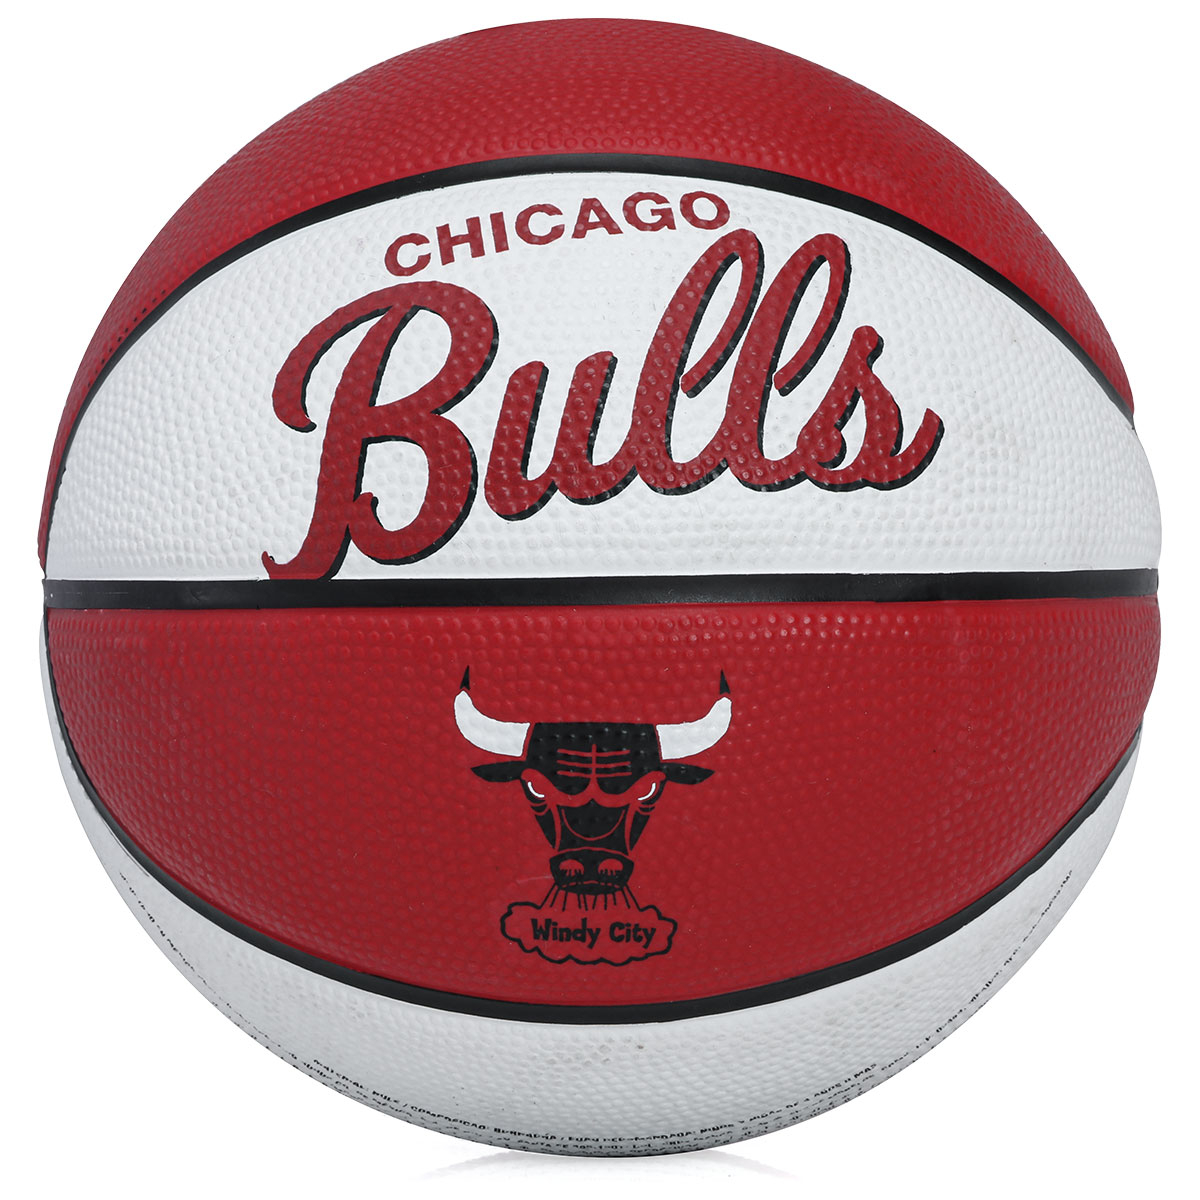 Mini Bola Basquete Wilson N.3 Nba Team Retro Houston Rockets - NOTREINO –  Produtos Oficiais - Loja Virtual